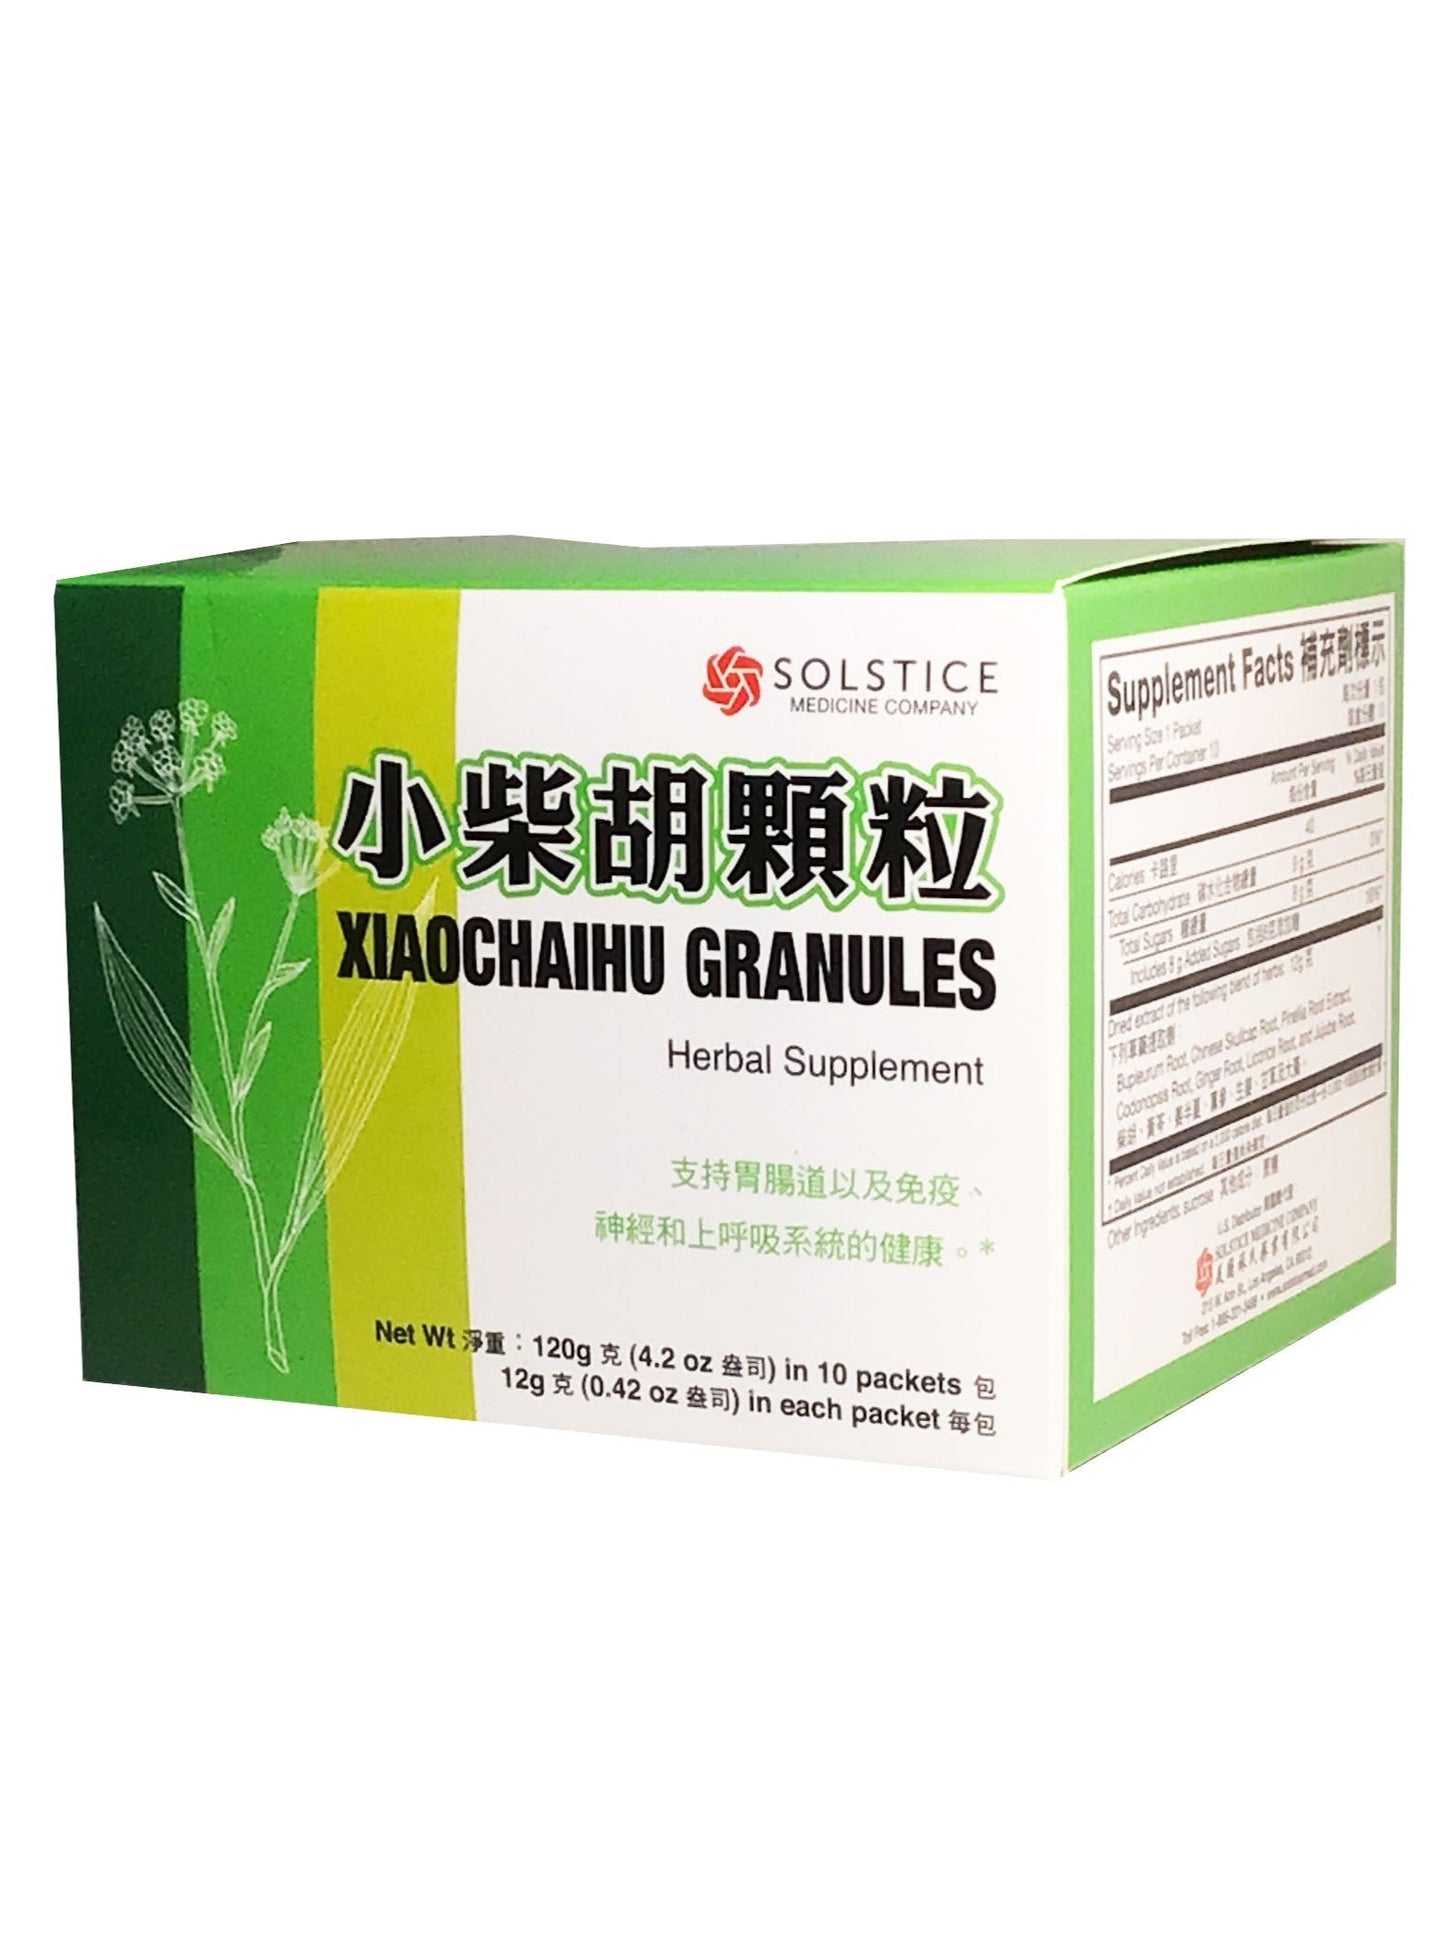 XiaoChaiHu Granules (12g x 10 packets) 榆林牌 小柴胡颗粒 (12克 x 10小包)